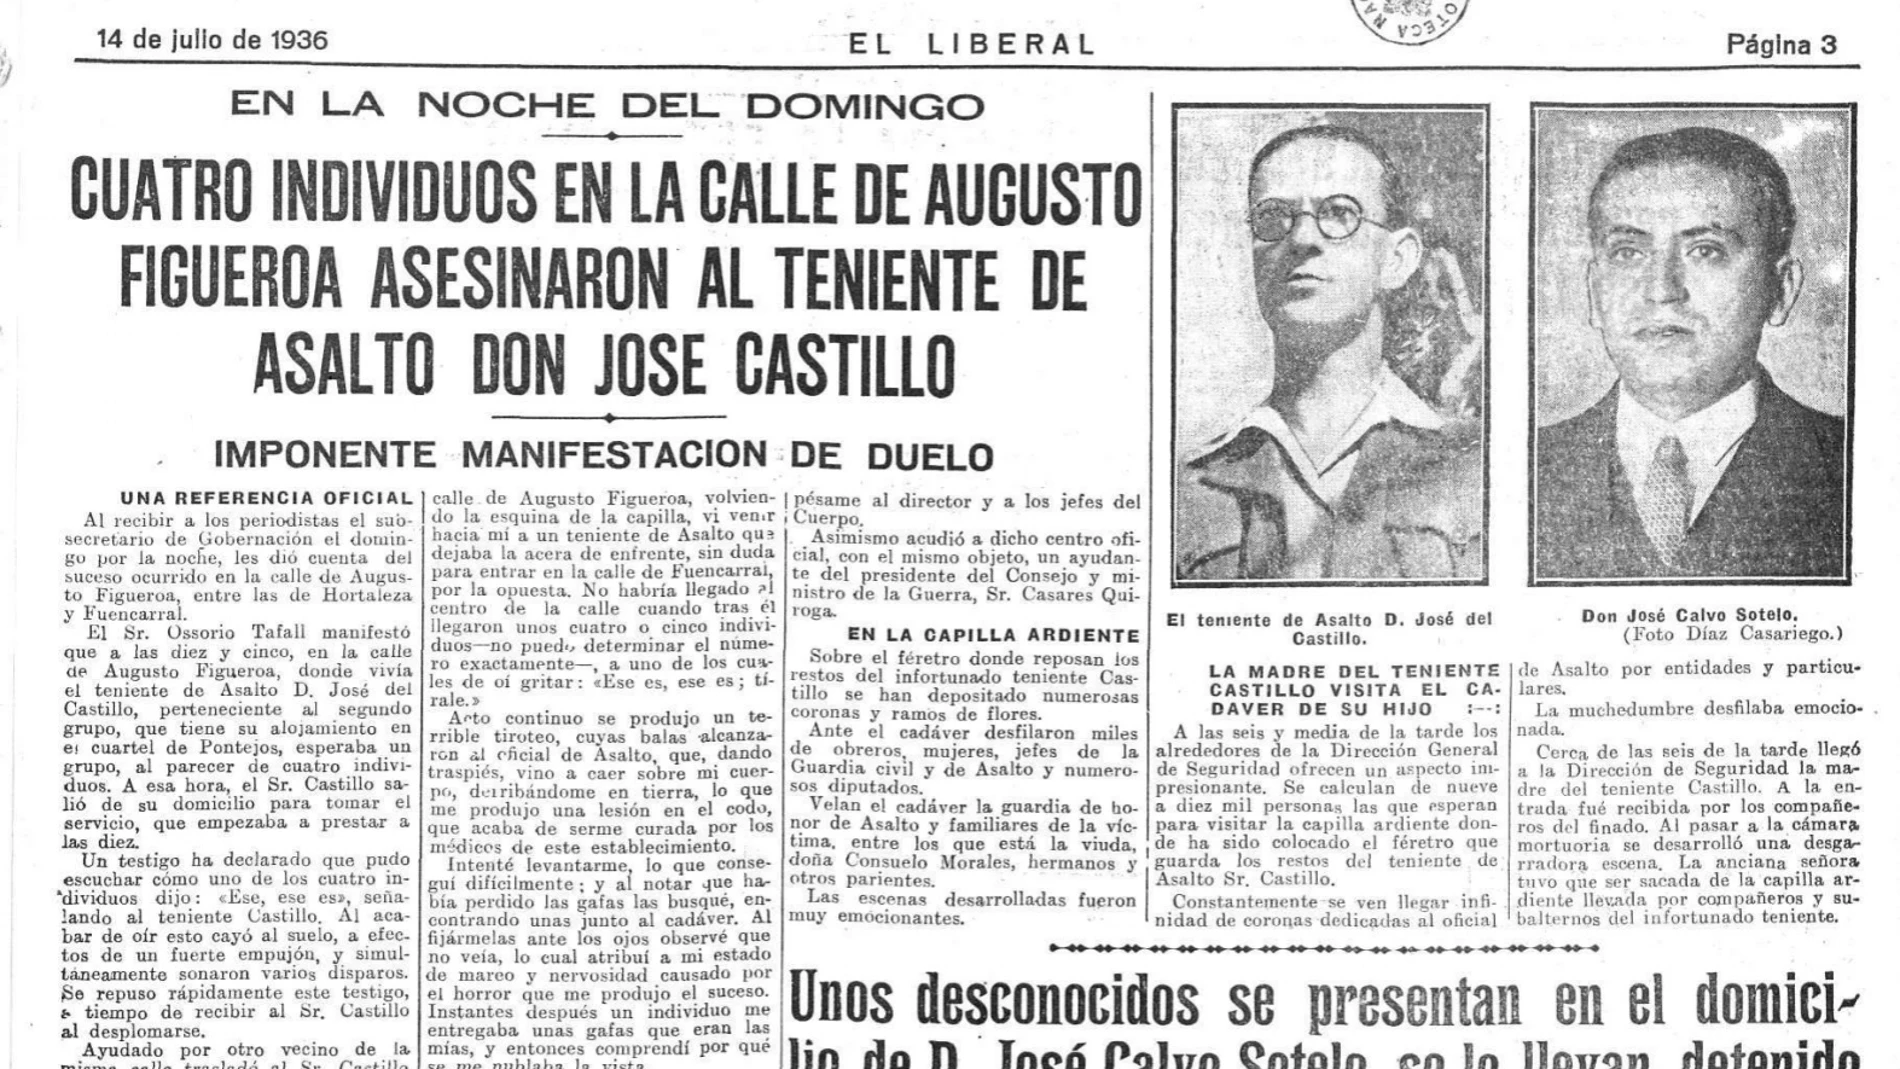 Página del diario "El Liberal" con la noticia de los asesinatos de Castillo y Calvo Sotelo